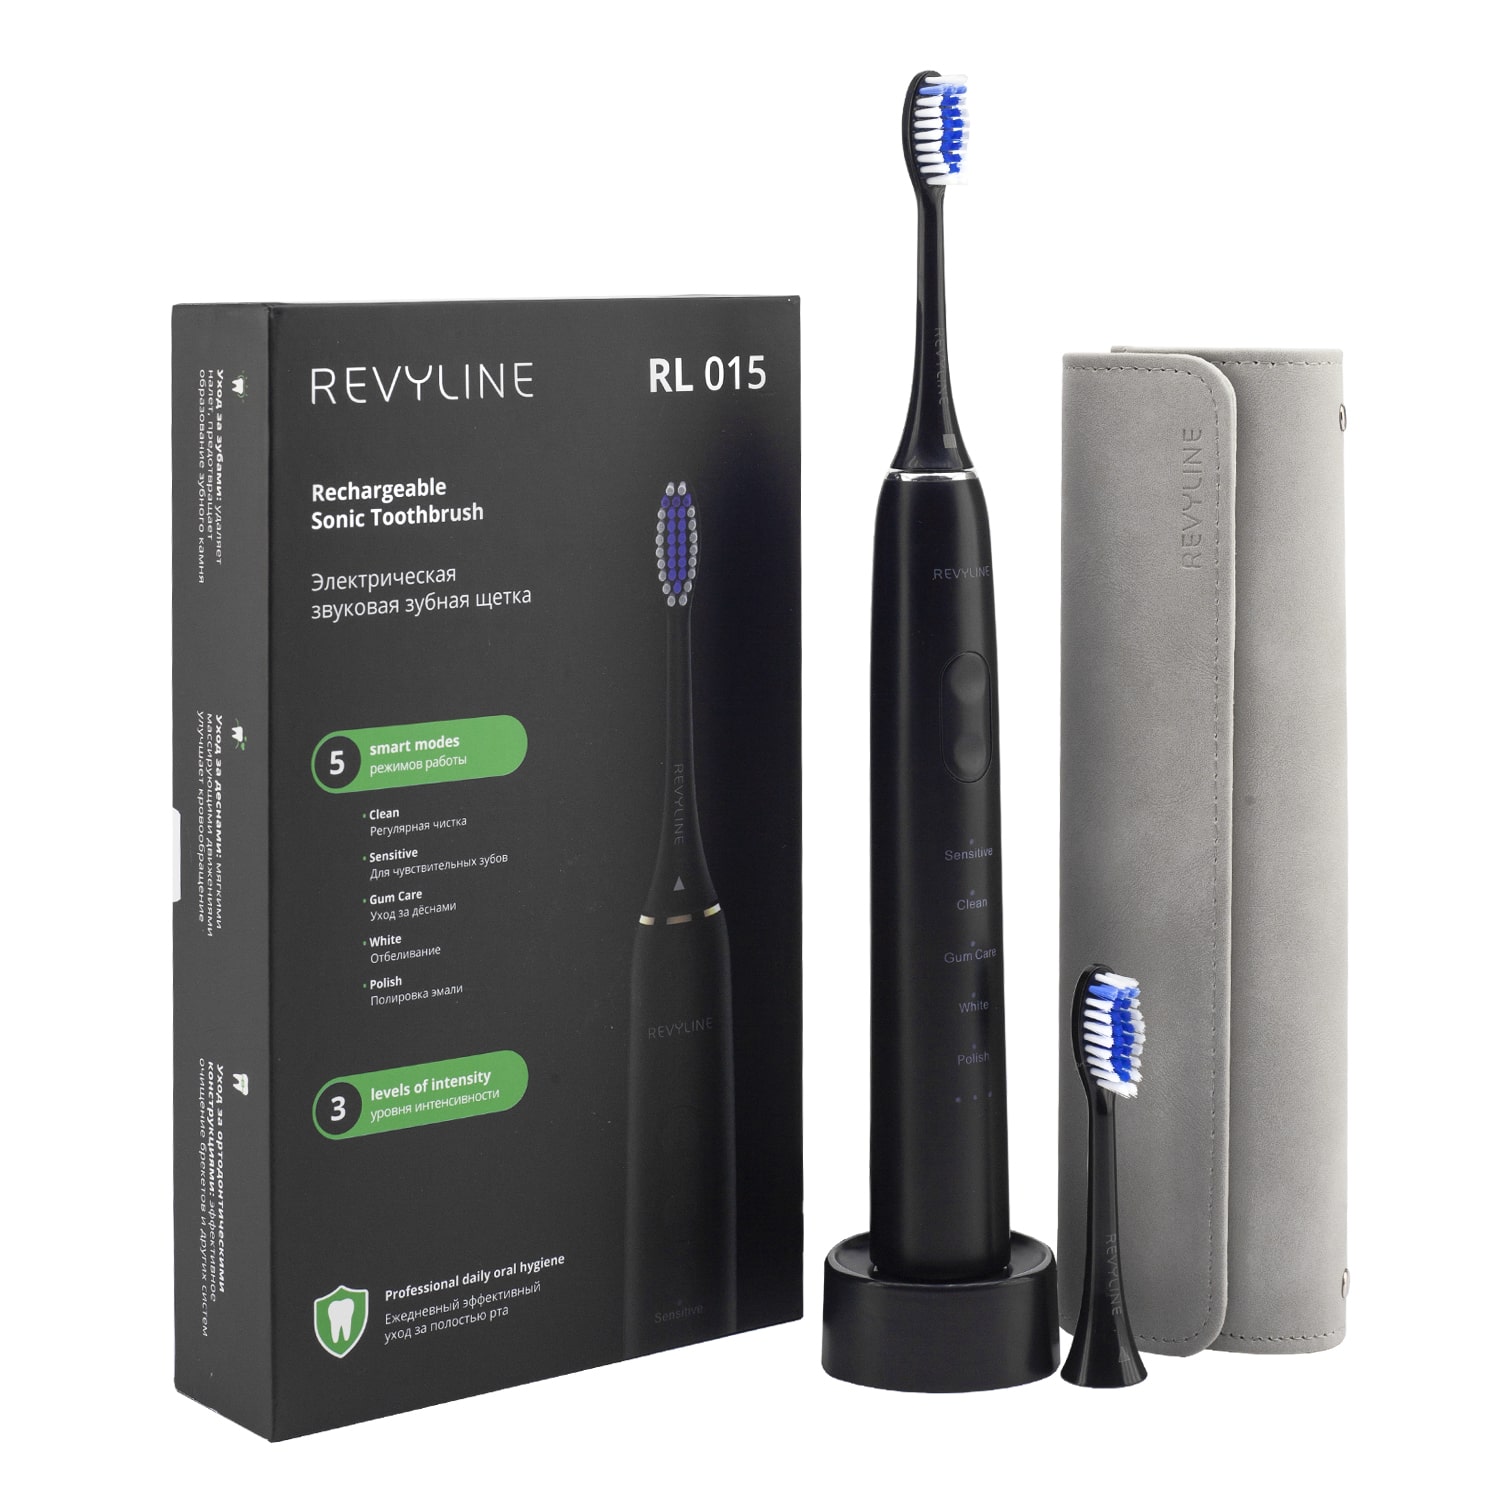 REVYLINE Электрическая звуковая зубная щетка RL 015, черная, 1 шт (REVYLINE, Электрические зубные щетки) комплект насадок revyline rl 015